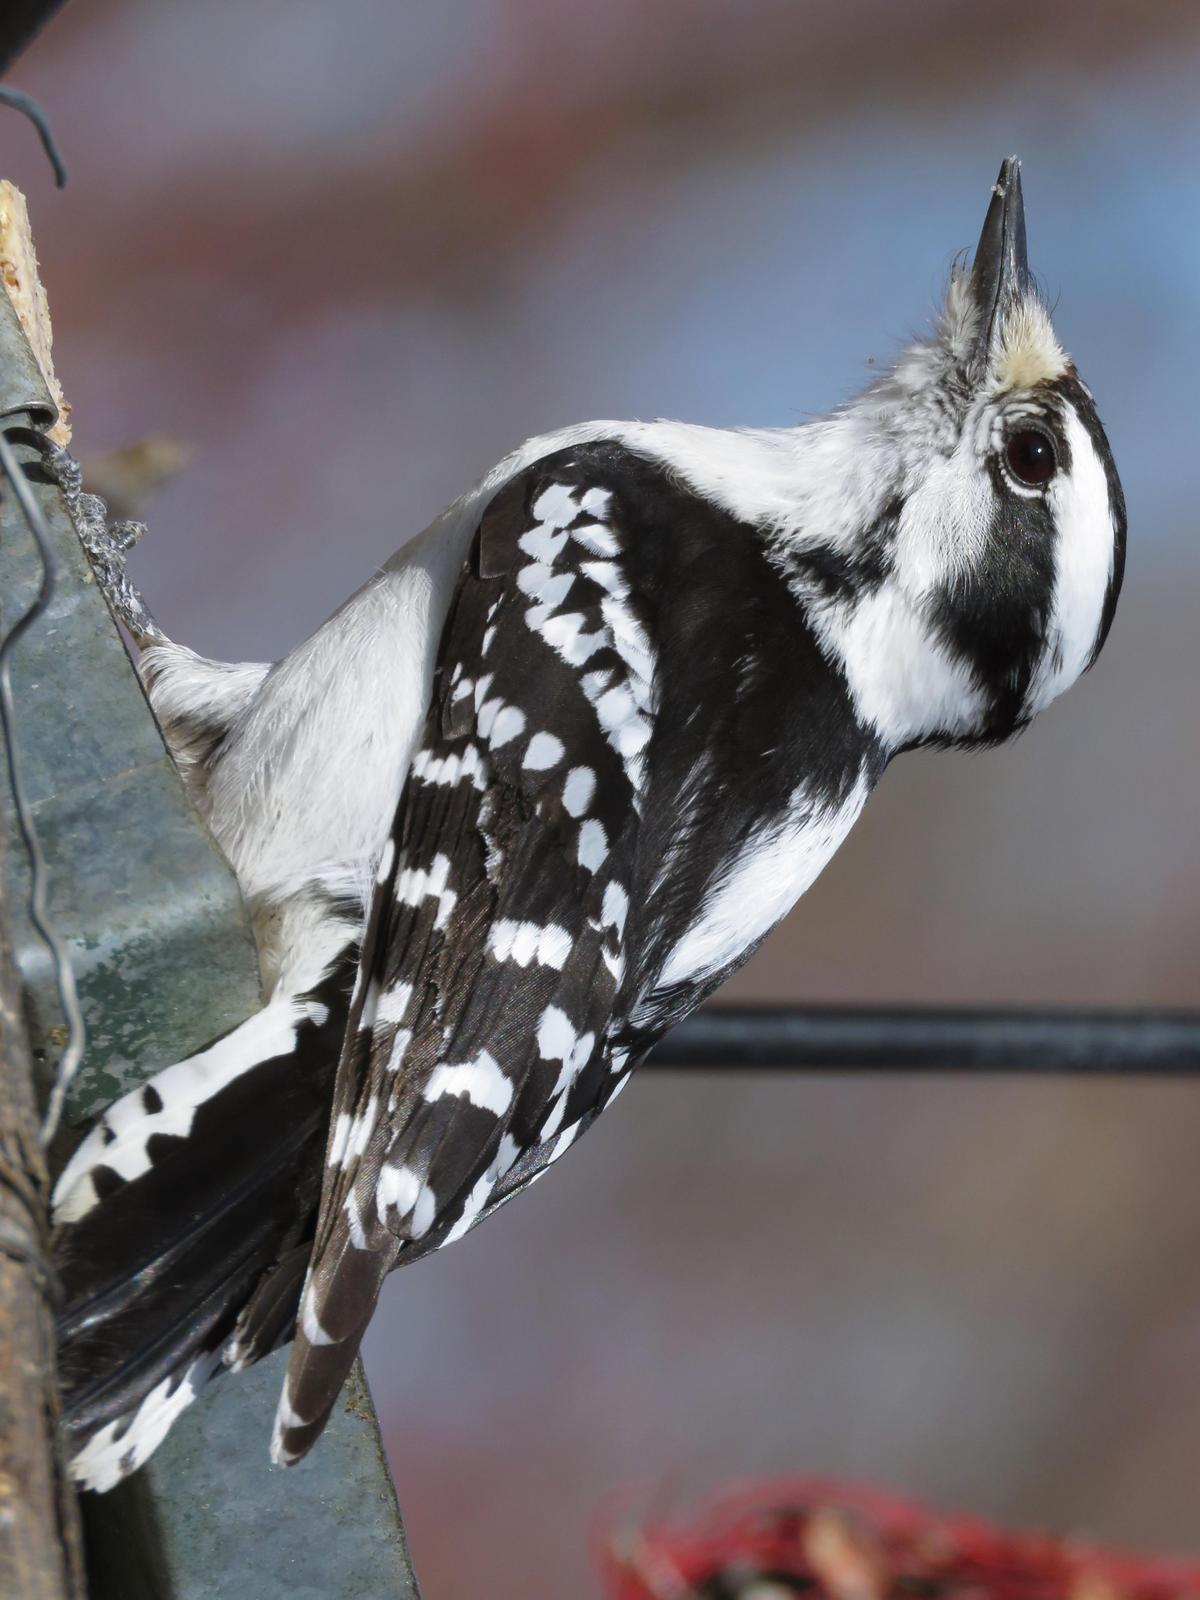 Downy Woodpecker Photo by Bob Neugebauer